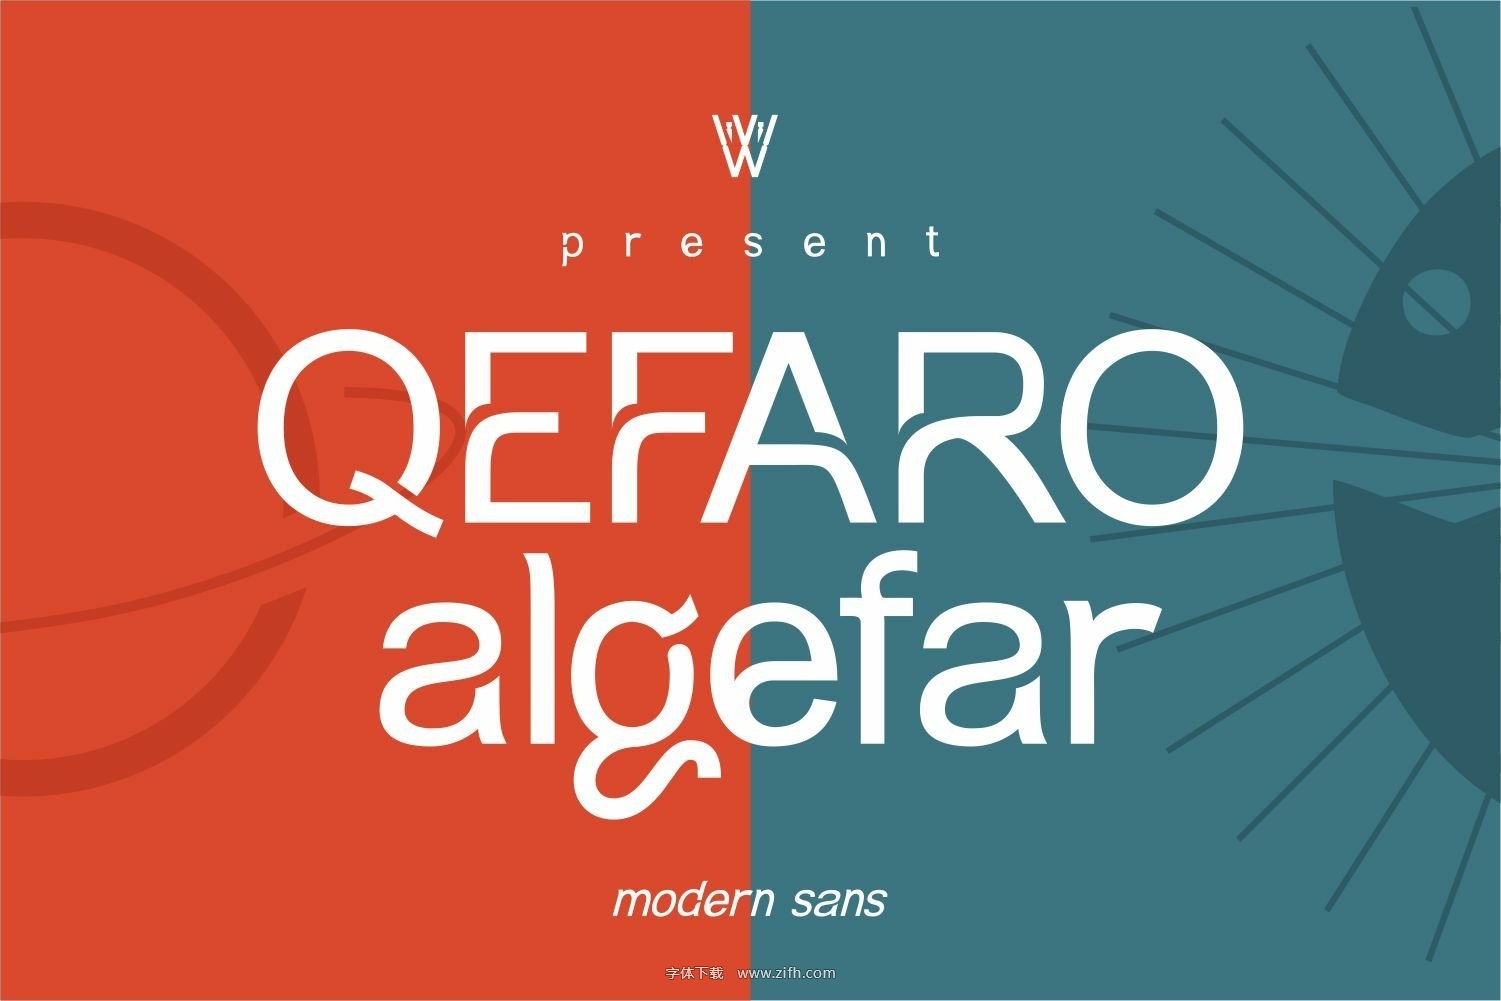 Qefaro algefar Font